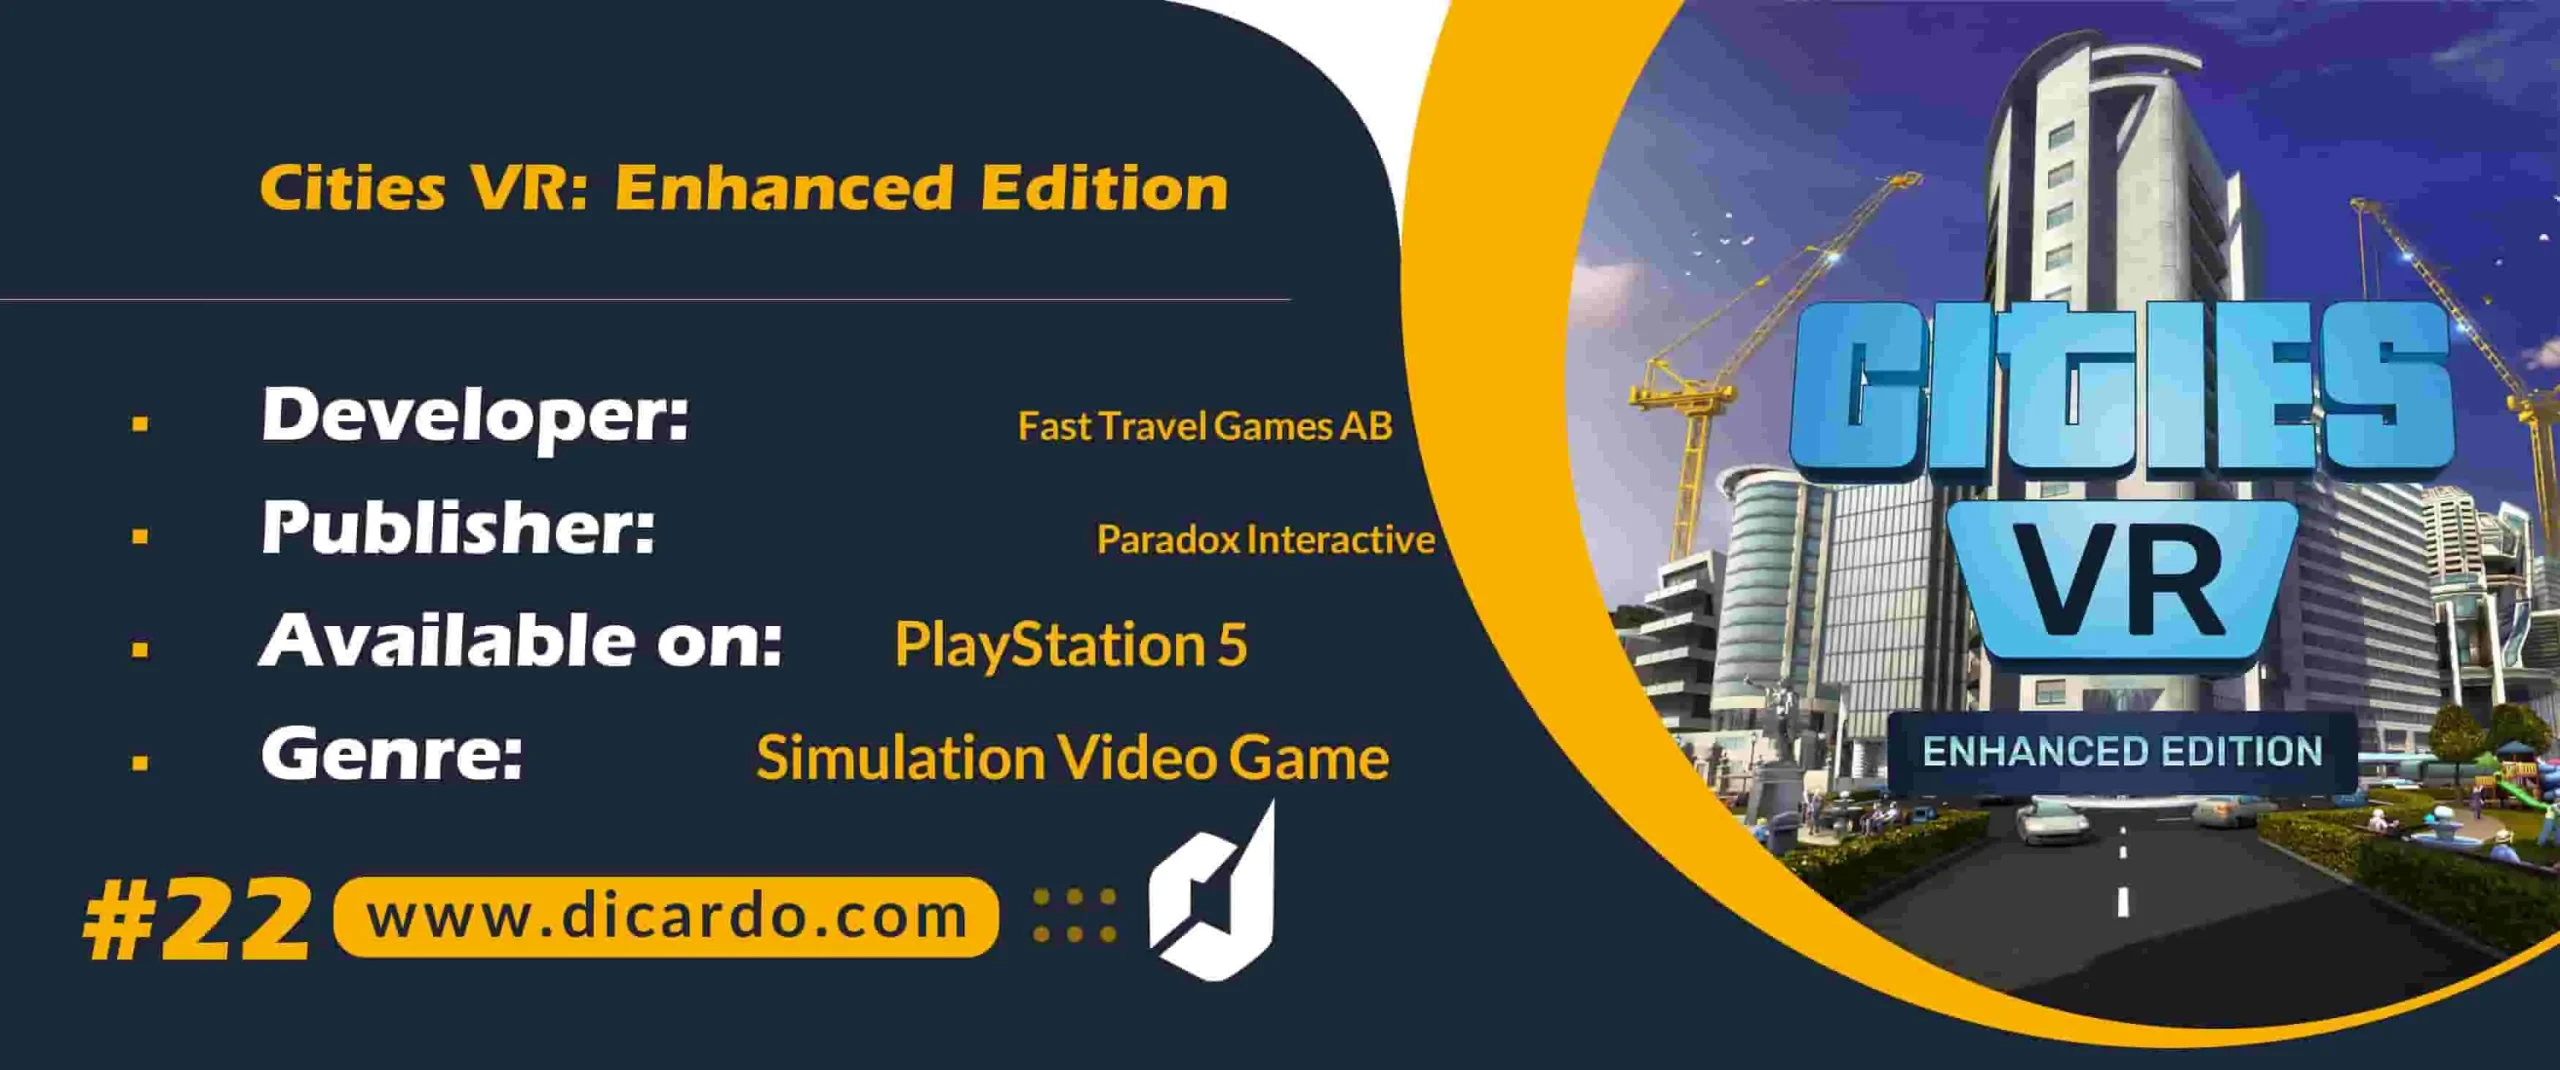 #22 سیتیز وی آر انهانسد ادیشن Cities VR: Enhanced Edition